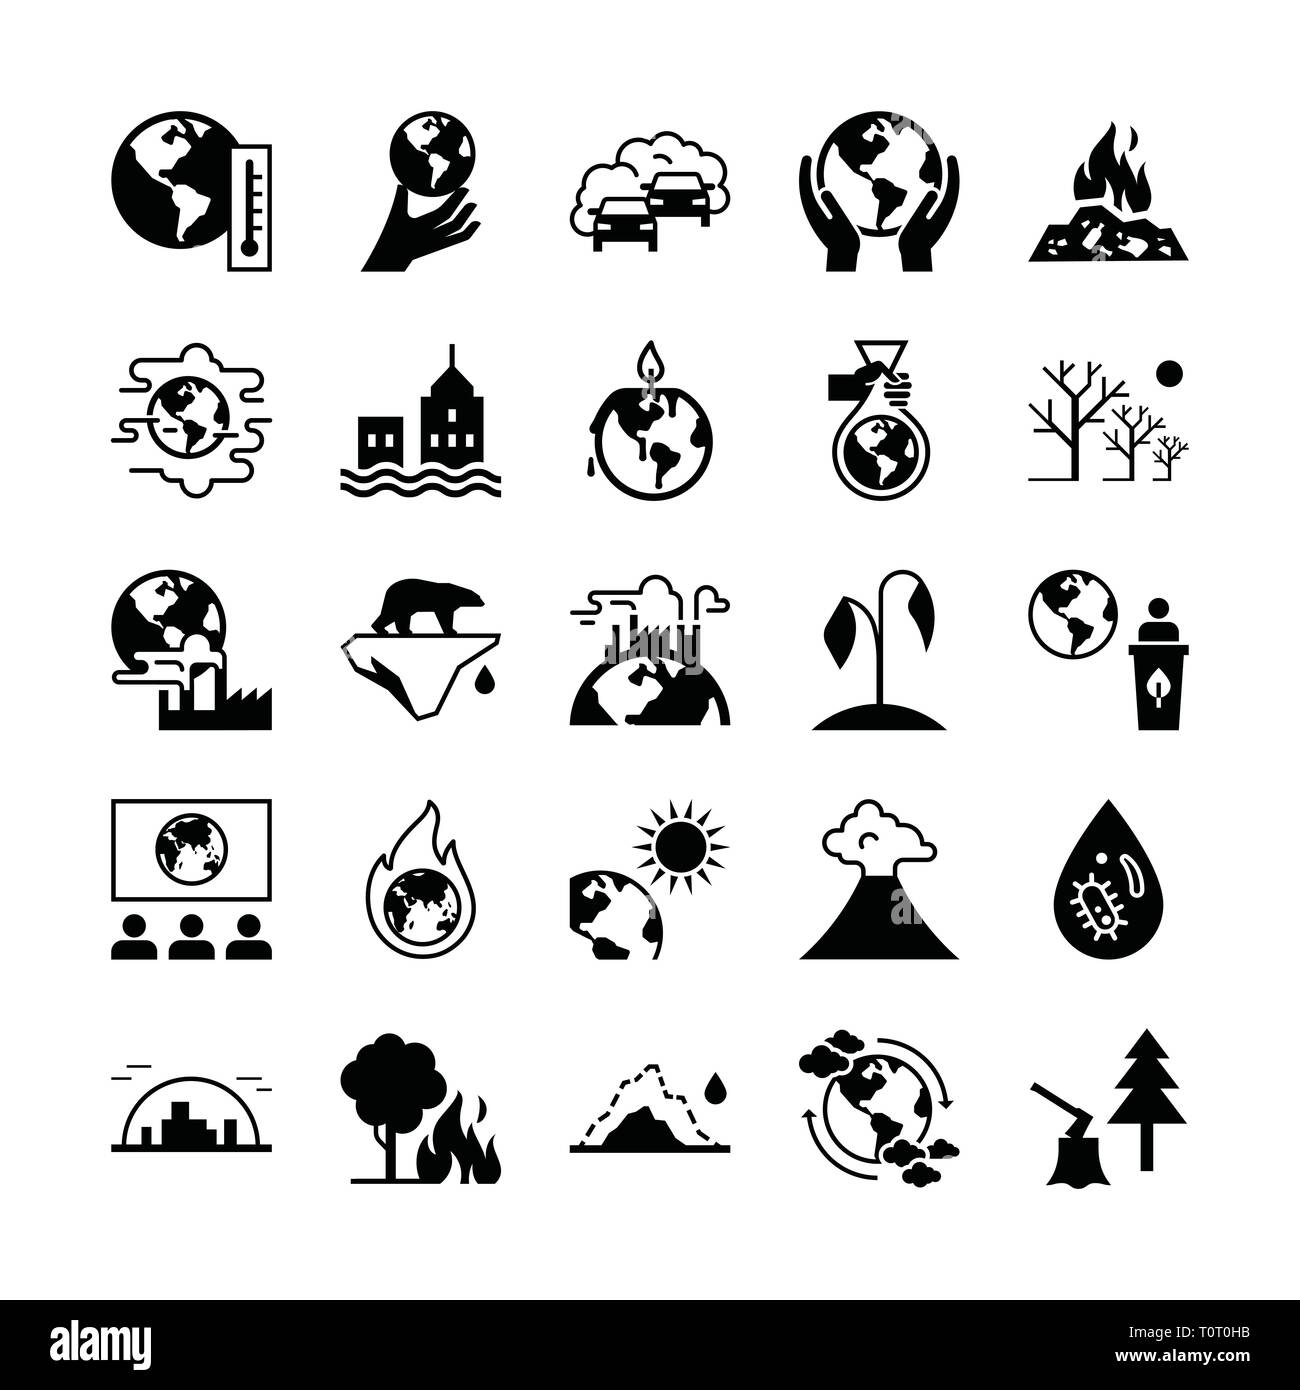 Satz von Vector Icons auf dem Thema Ökologie, globale Erwärmung und Ökologie Probleme unseres Planeten. Stock Vektor